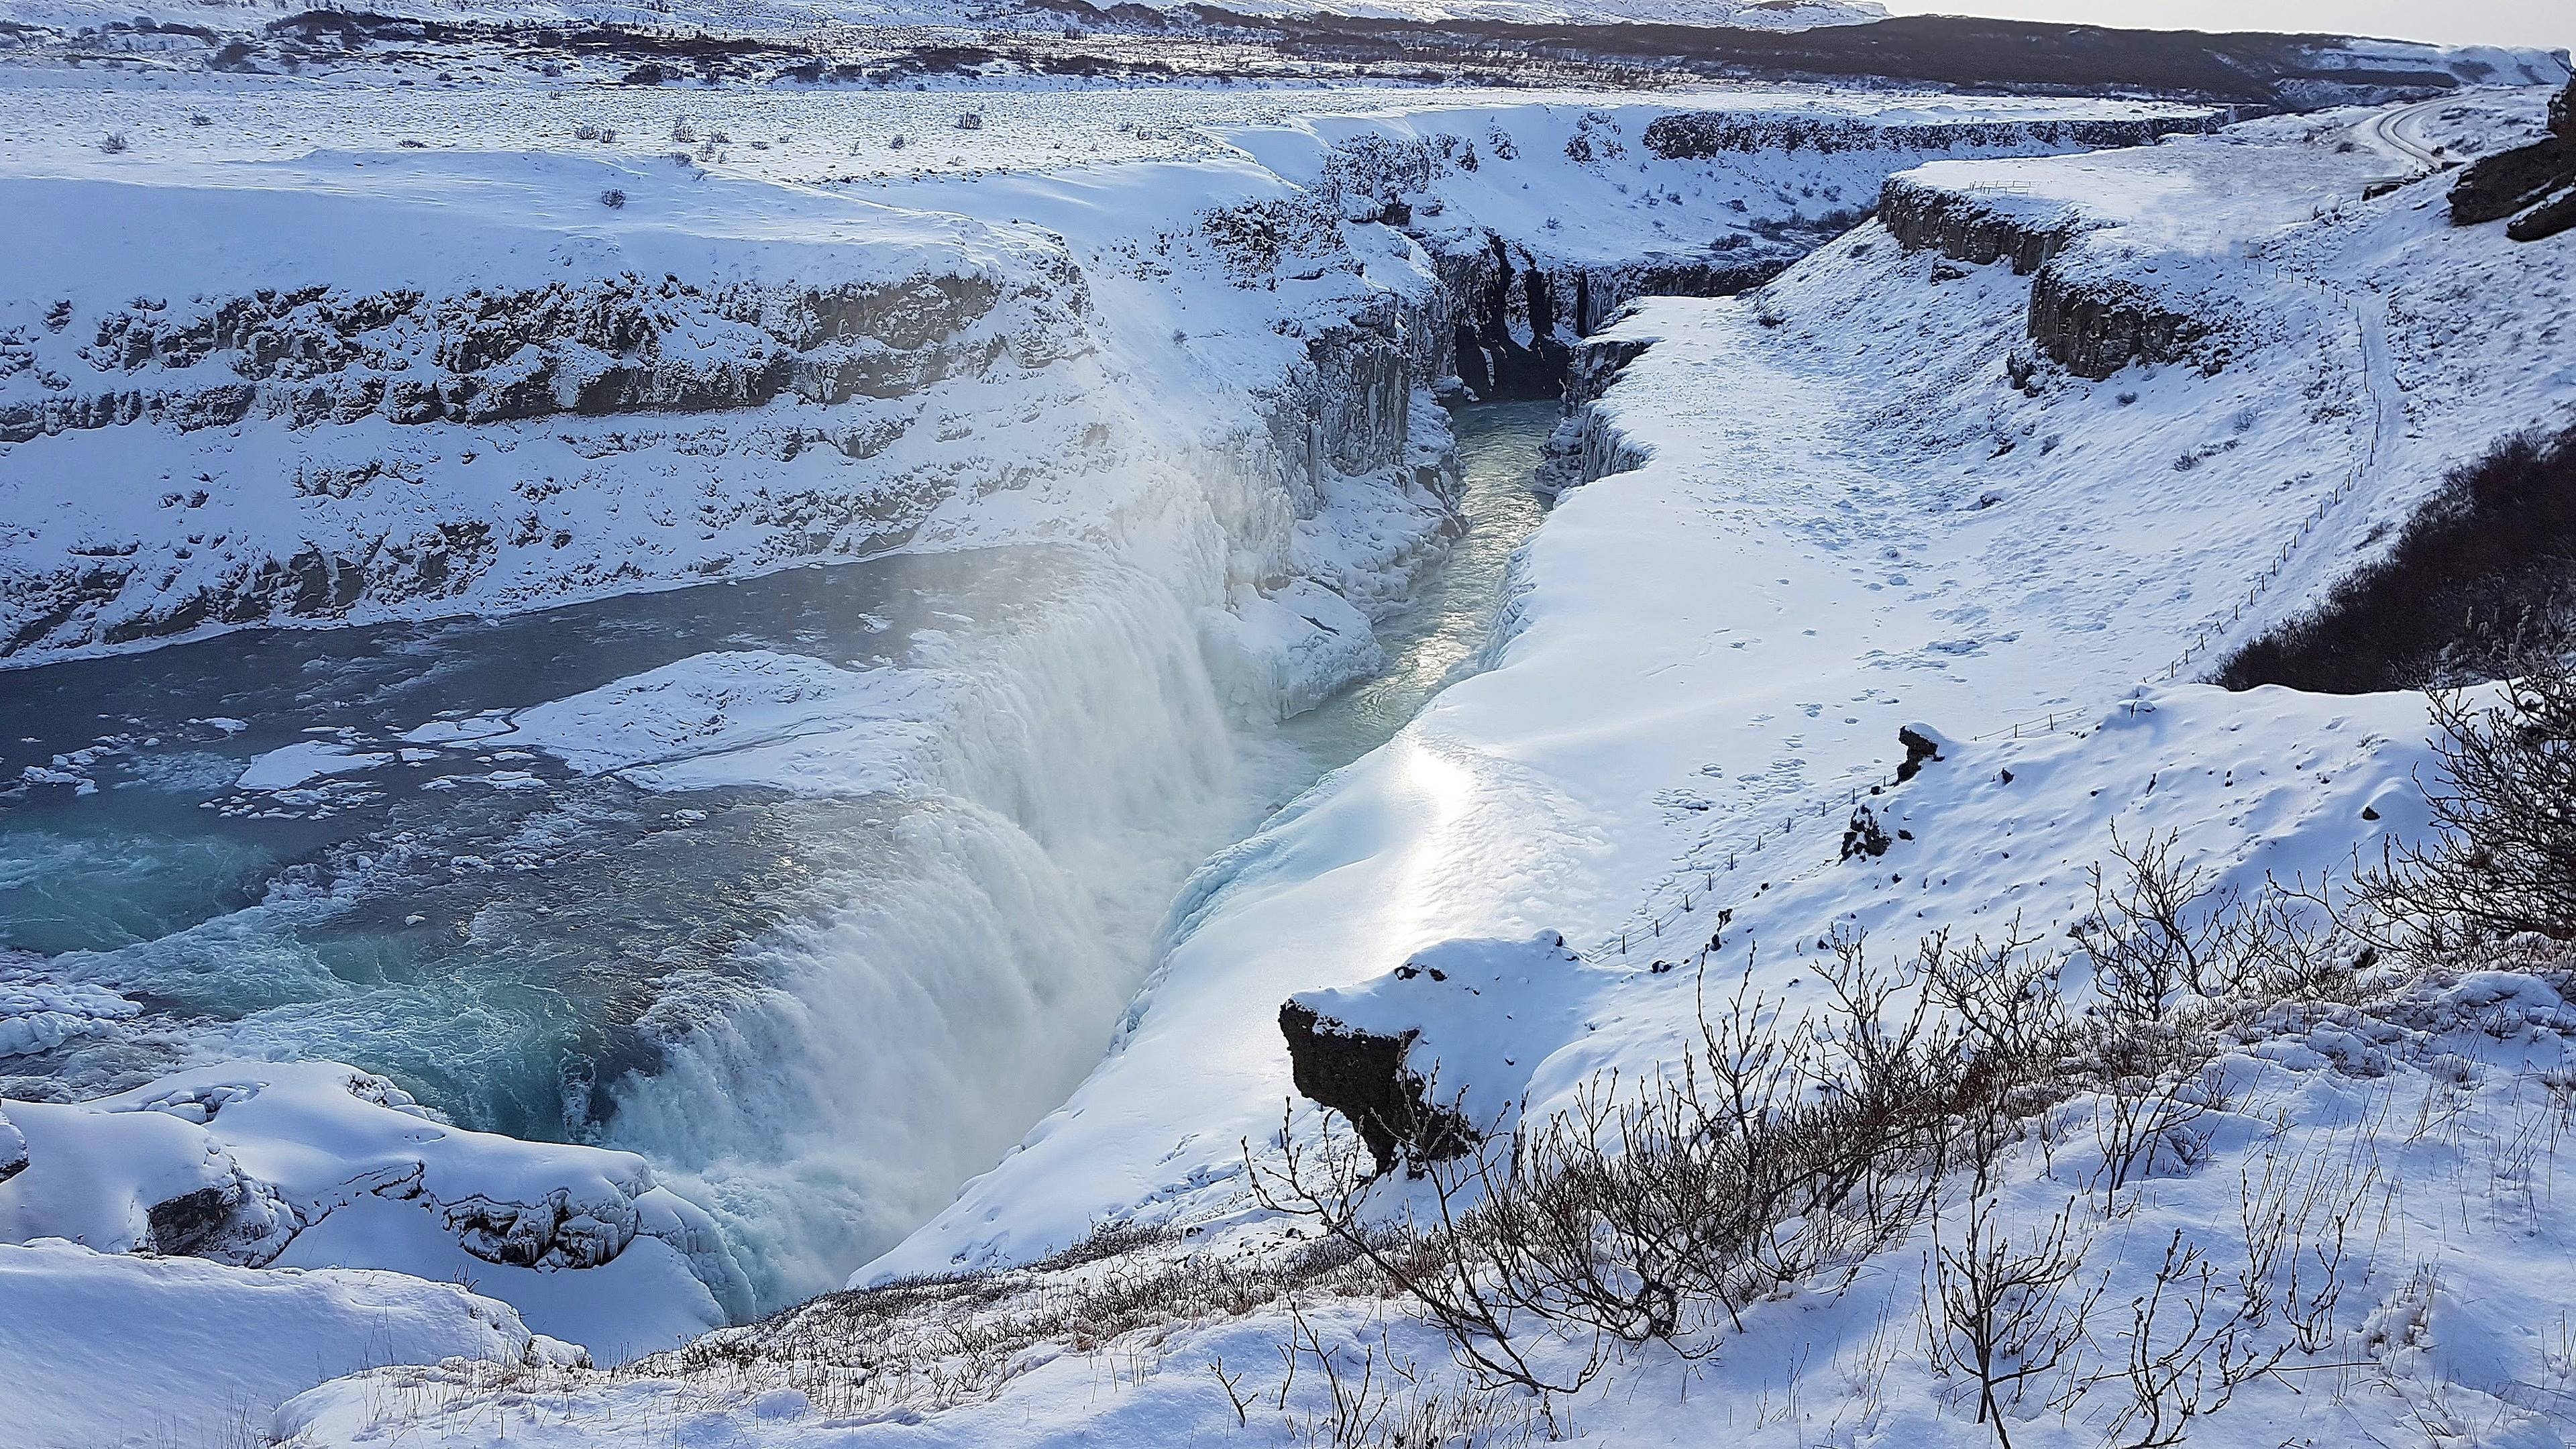 Gullfoss Waterfall, Winter wallpaper, Island wasserfall, Snowy beauty, 3840x2160 4K Desktop